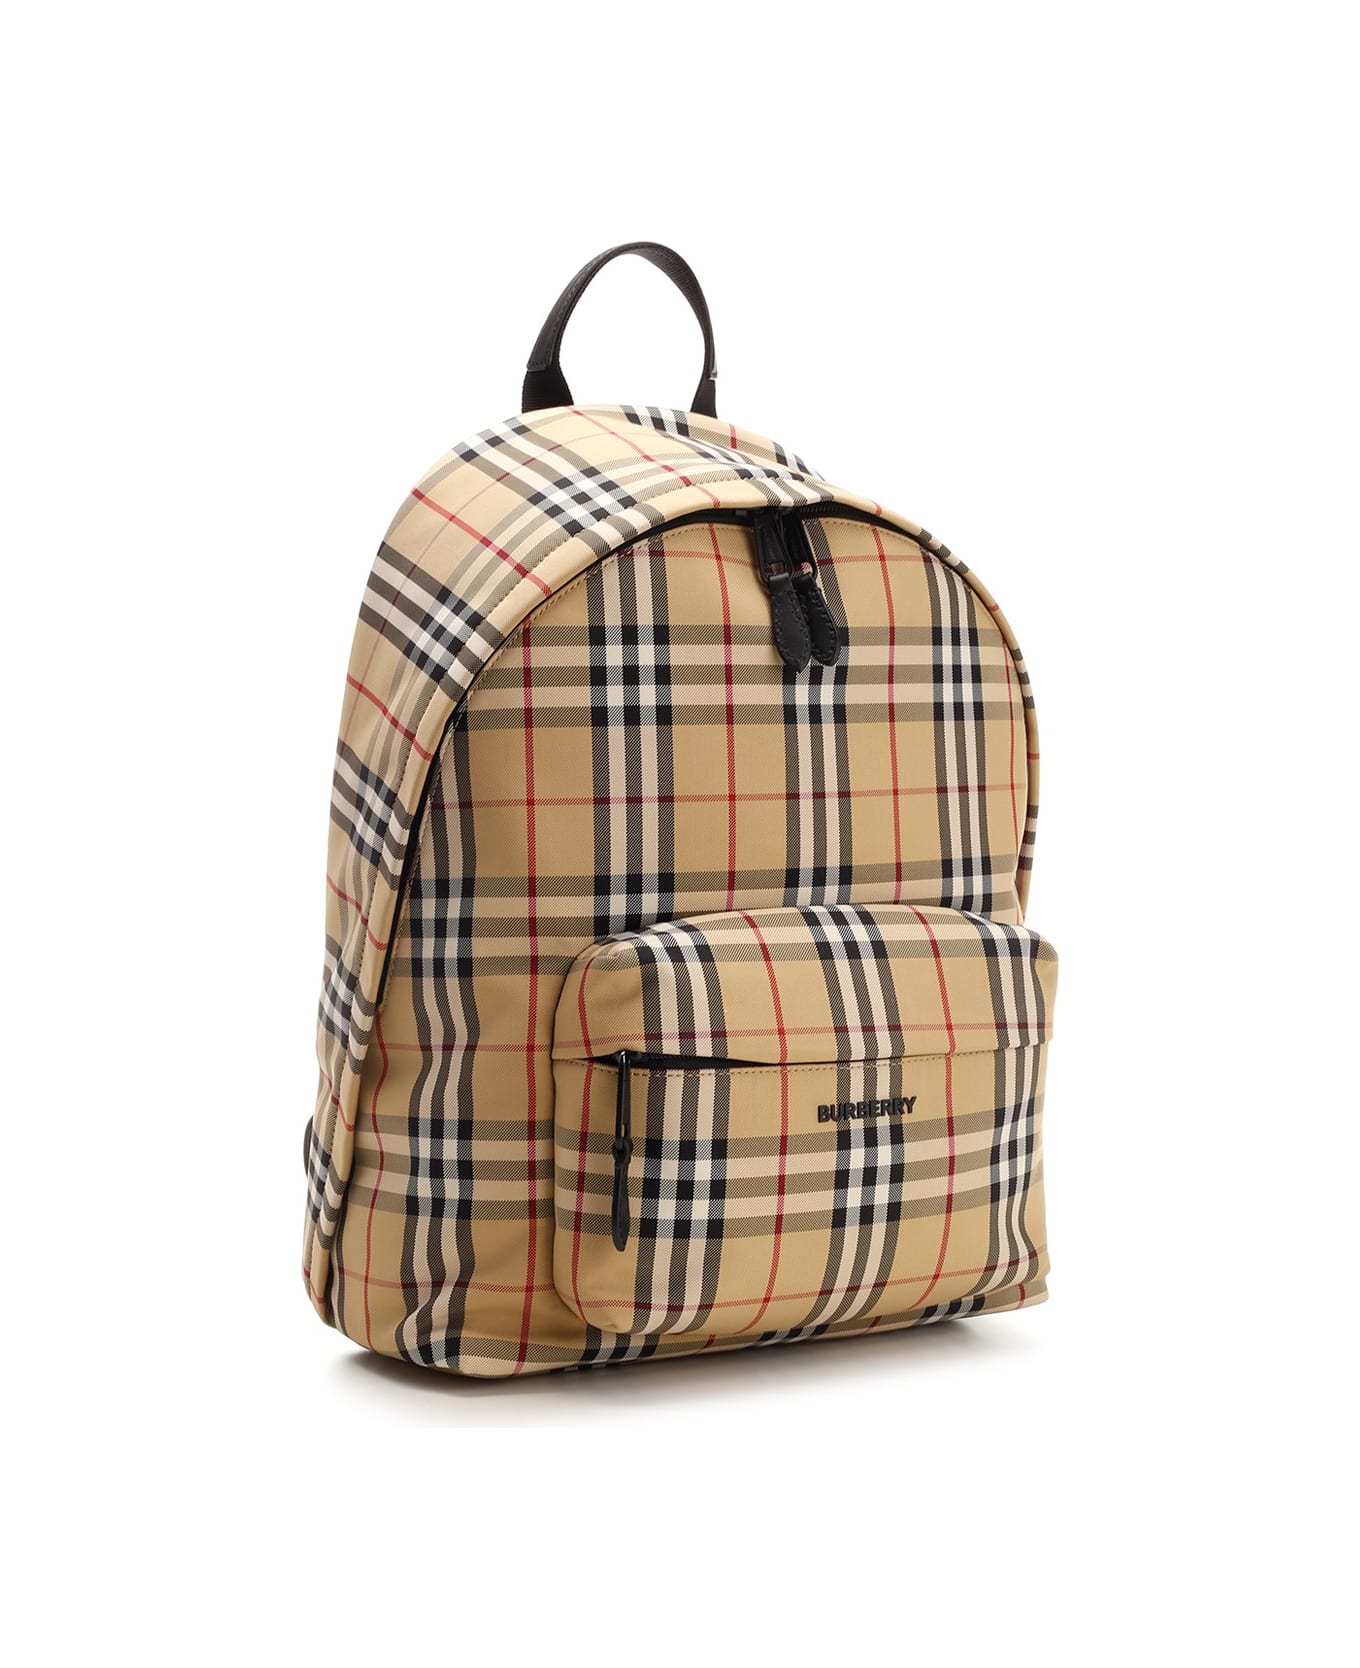 Burberry Nylon Backpack - Beige